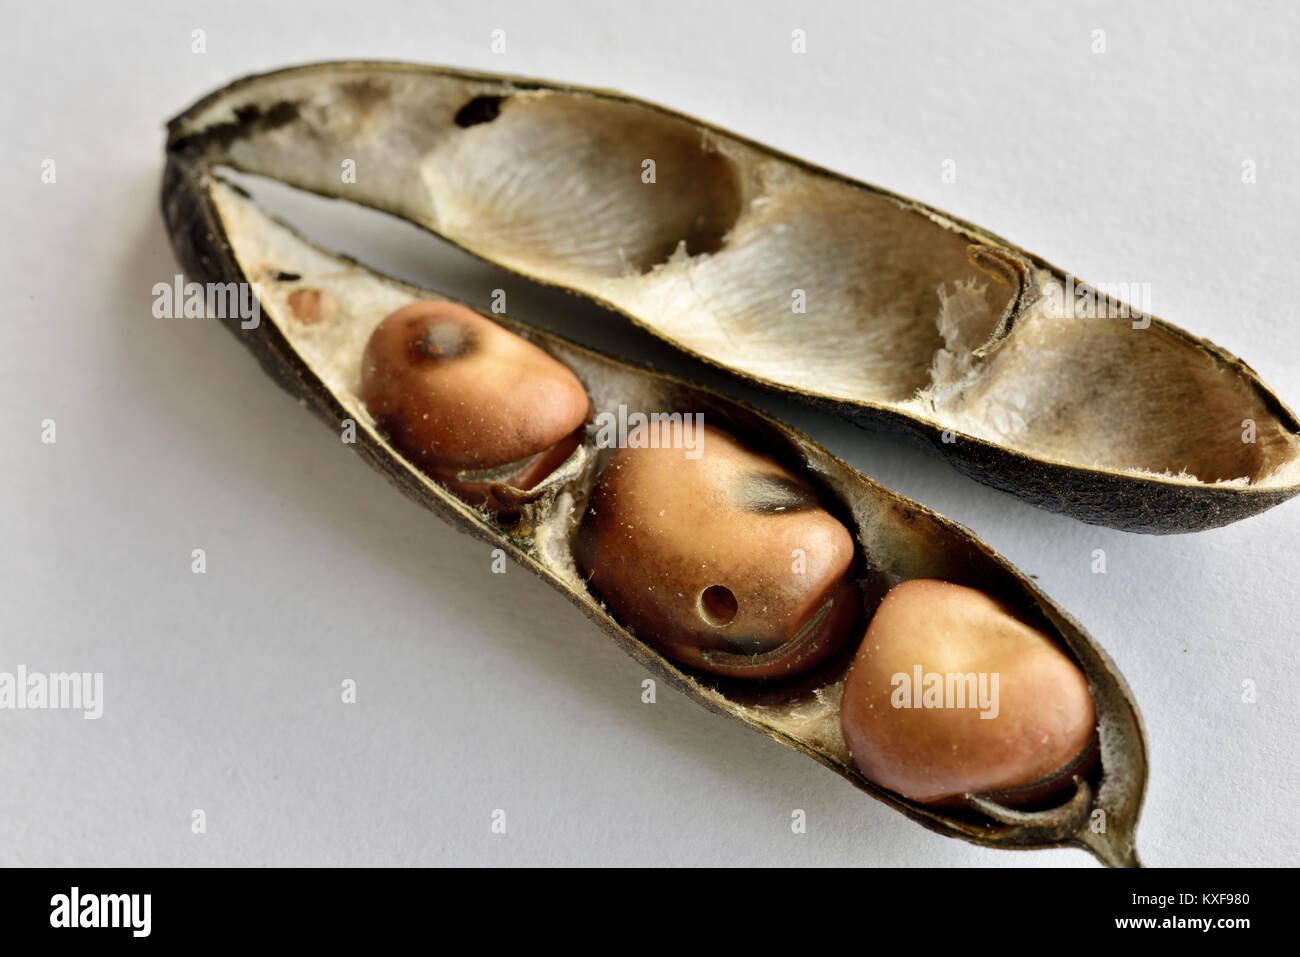 Les fèves séchées en pod ou fèves, un important aliment de base dans certains pays, montrant des trous produits par le bean seed beetle Banque D'Images